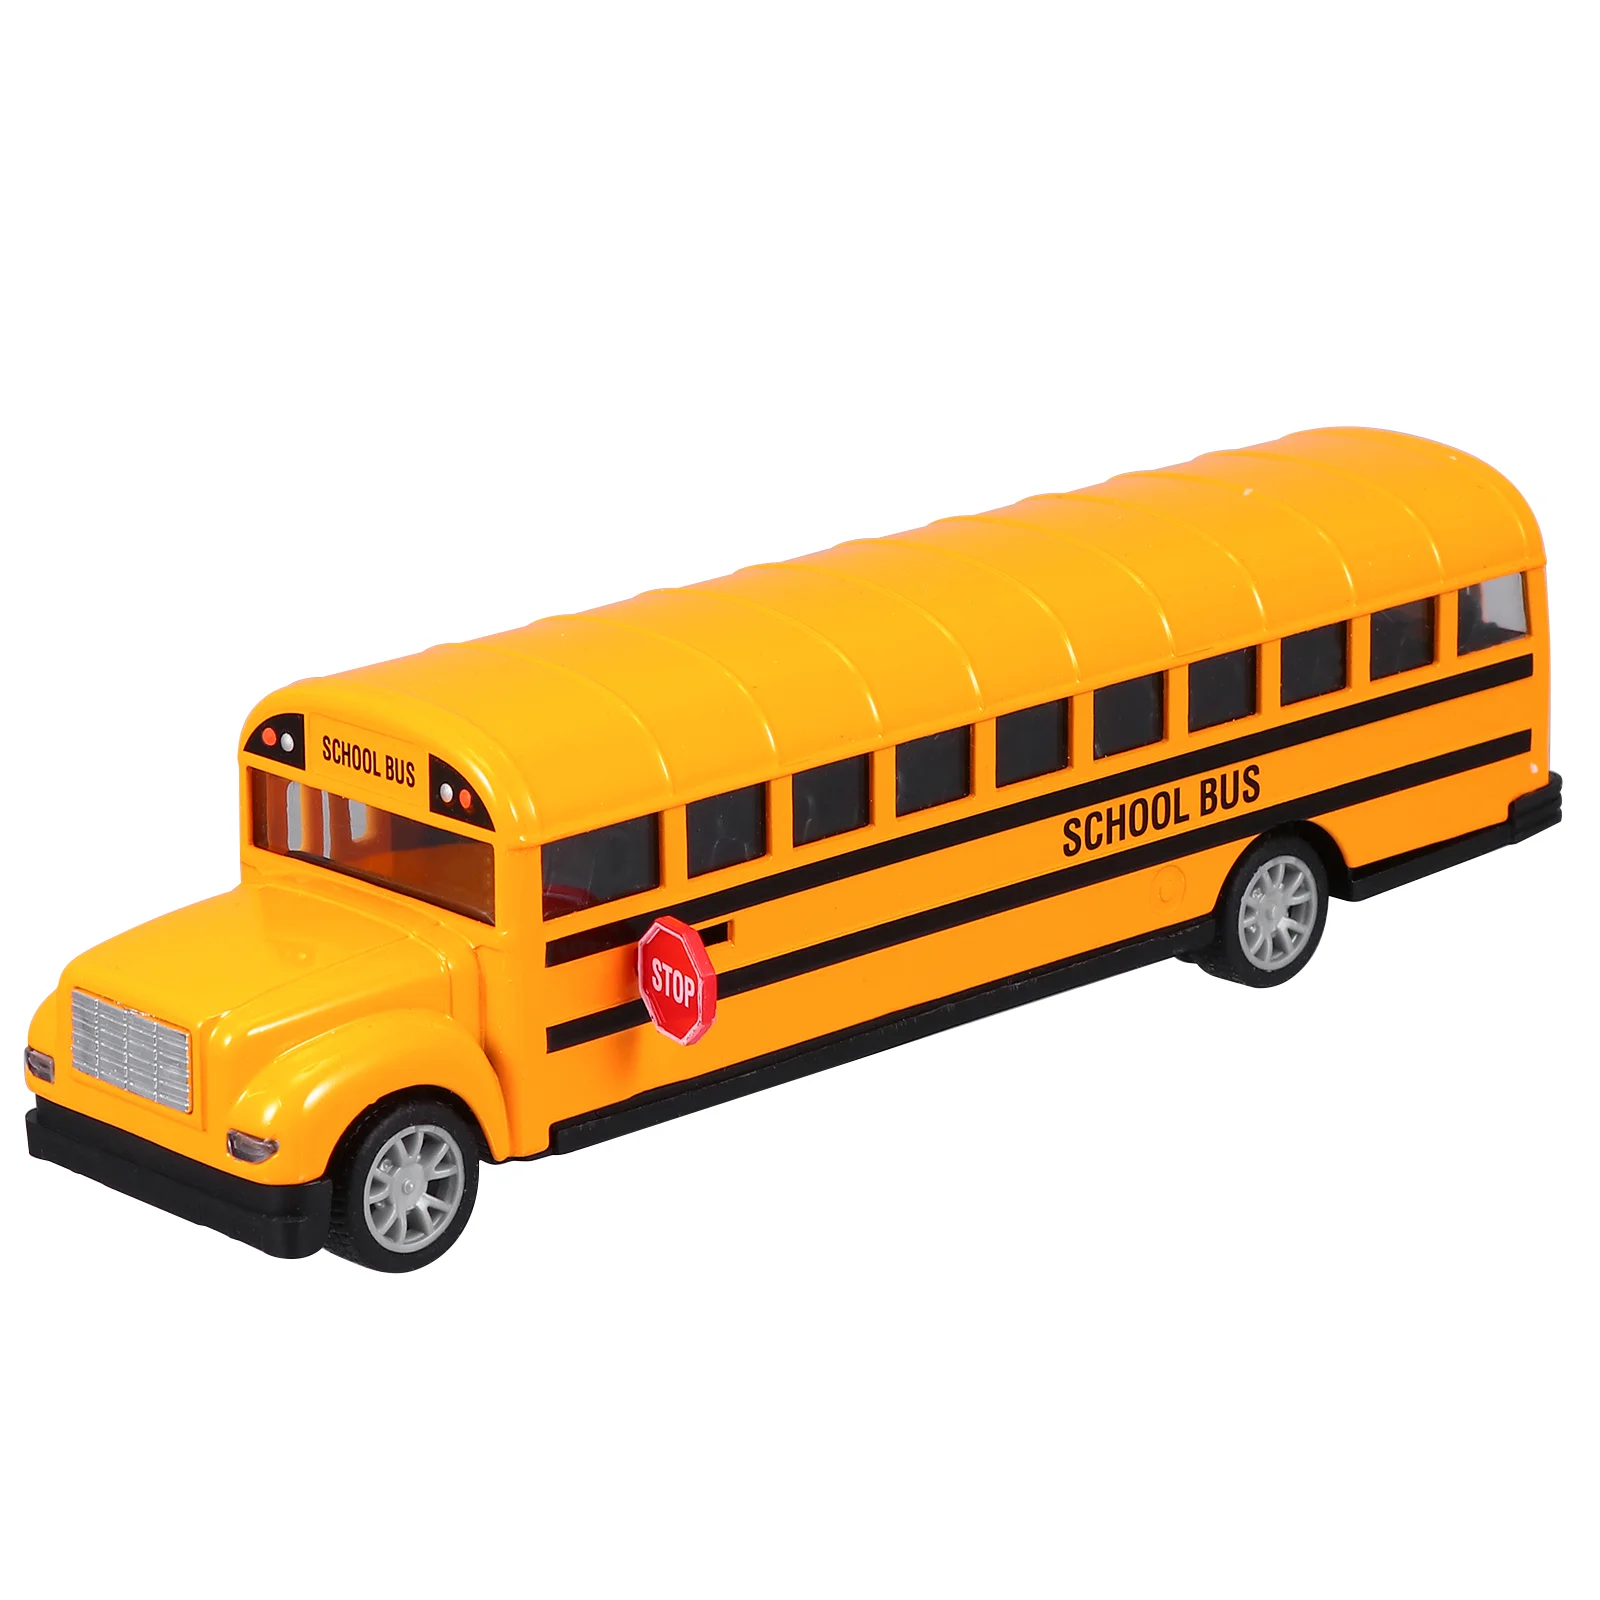 

Игрушечный автомобиль для малышей, Металлический Игрушечный Автомобиль, детский автобус, школьный автобус, игрушки для малышей, модель школьного автобуса, модель автомобиля, игрушка